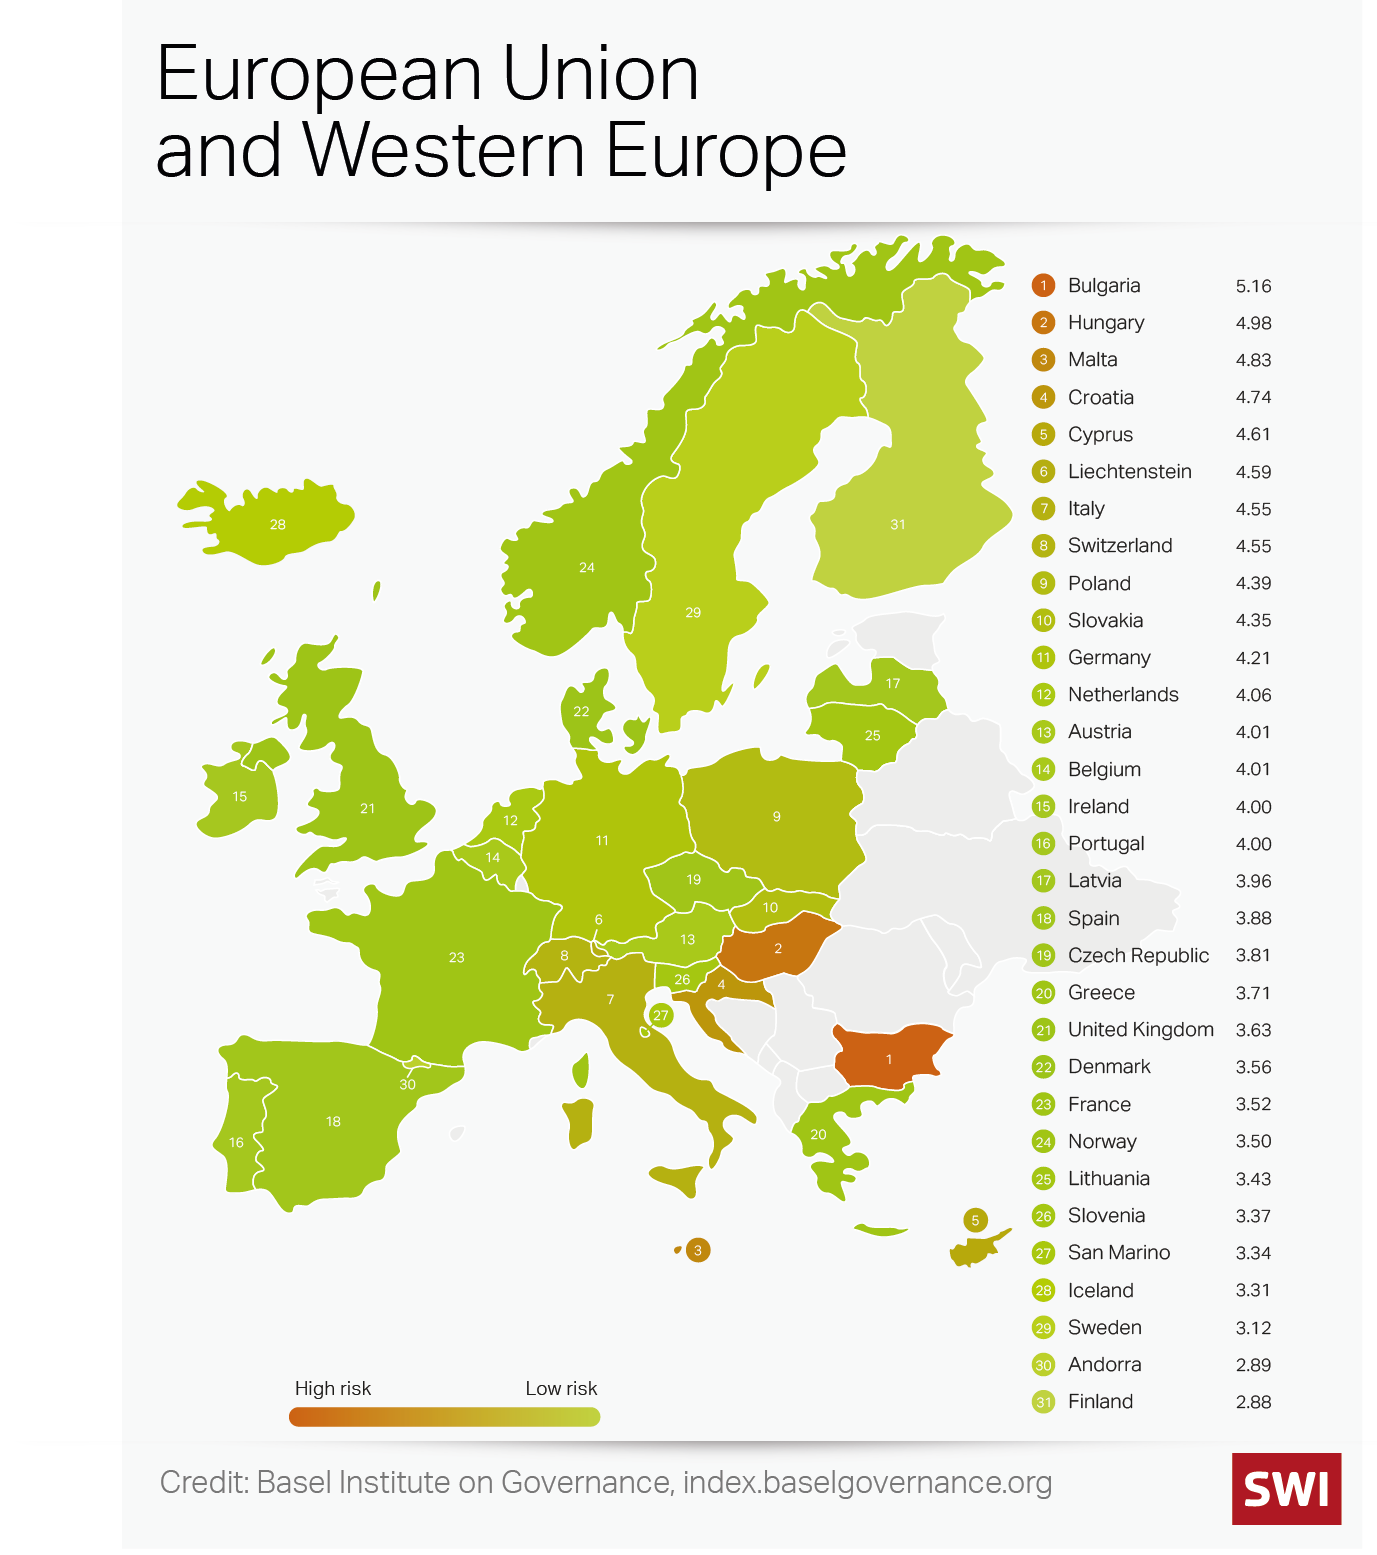 Europe money laundering map